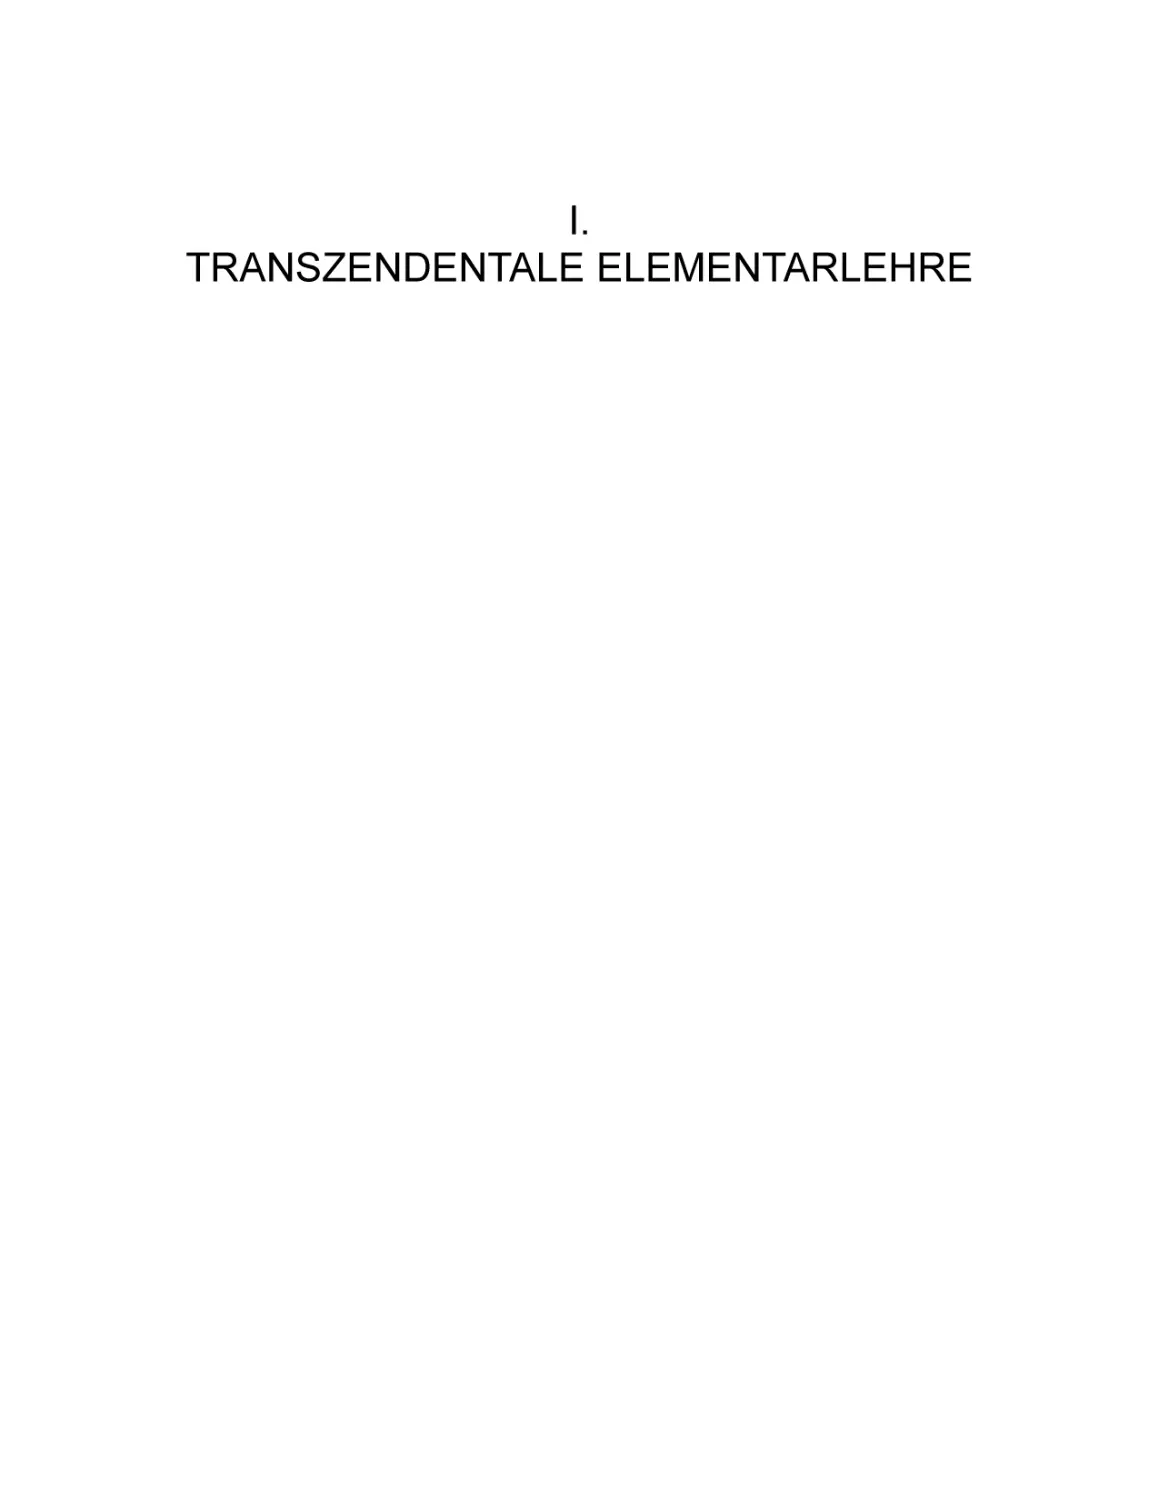 I. TRANSZENDENTALE ELEMENTARLEHRE